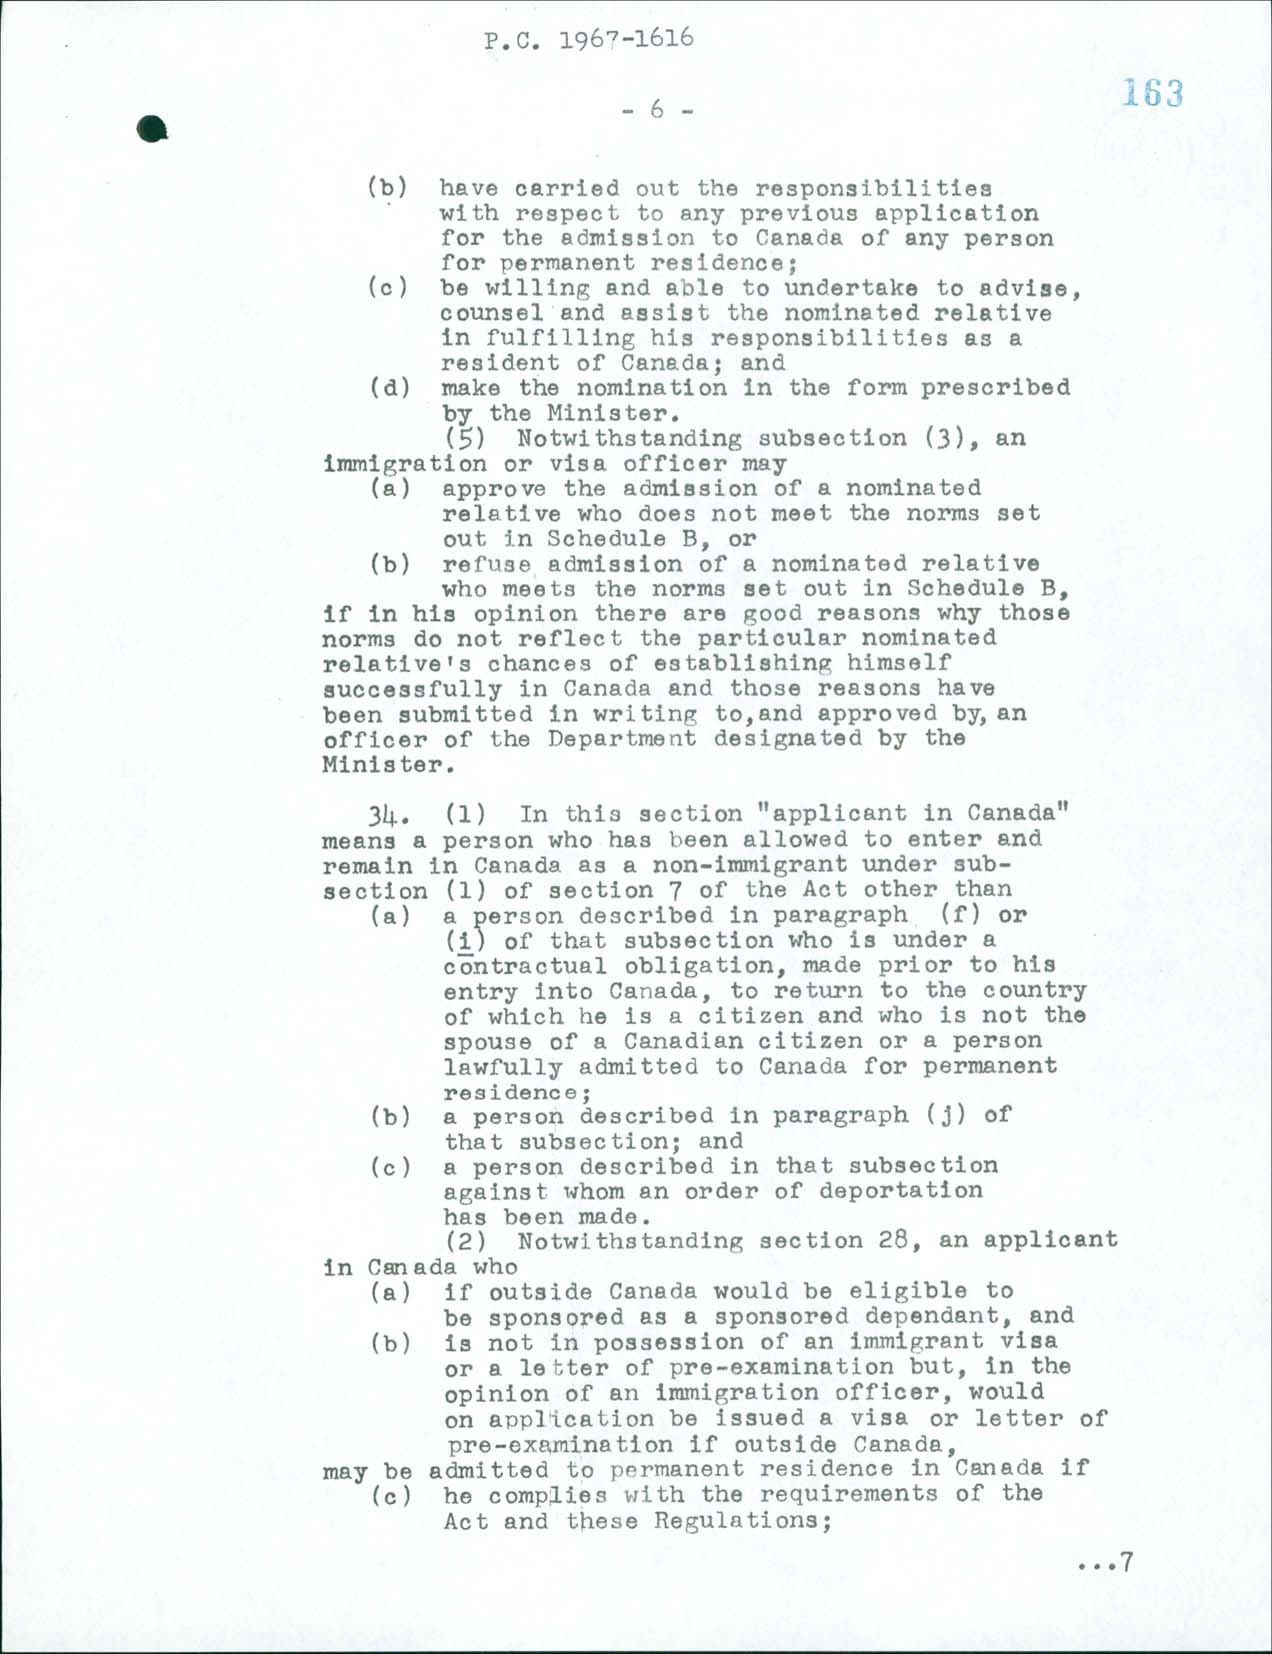 Page 6 Règlement sur l’immigration, Décret du Conseil CP 1967-1616, 1967